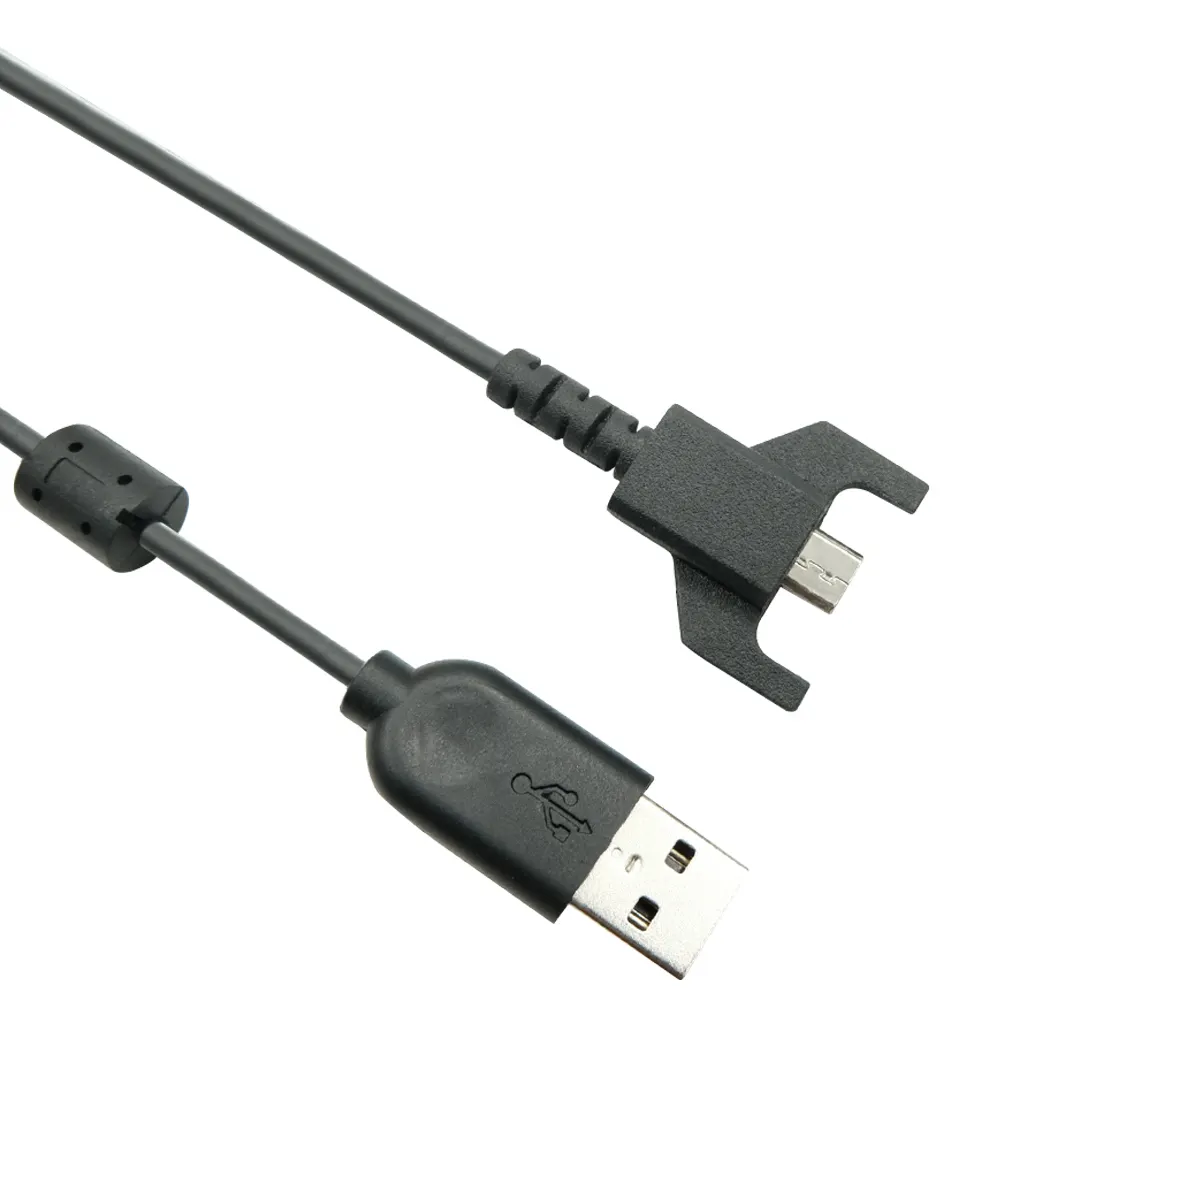 G703 G900 G903 G Pro 무선 G Pro X 초경량 게임용 마우스용 로지텍 오리지널 USB 충전 케이블, USB to 마이크로 USB (블랙)